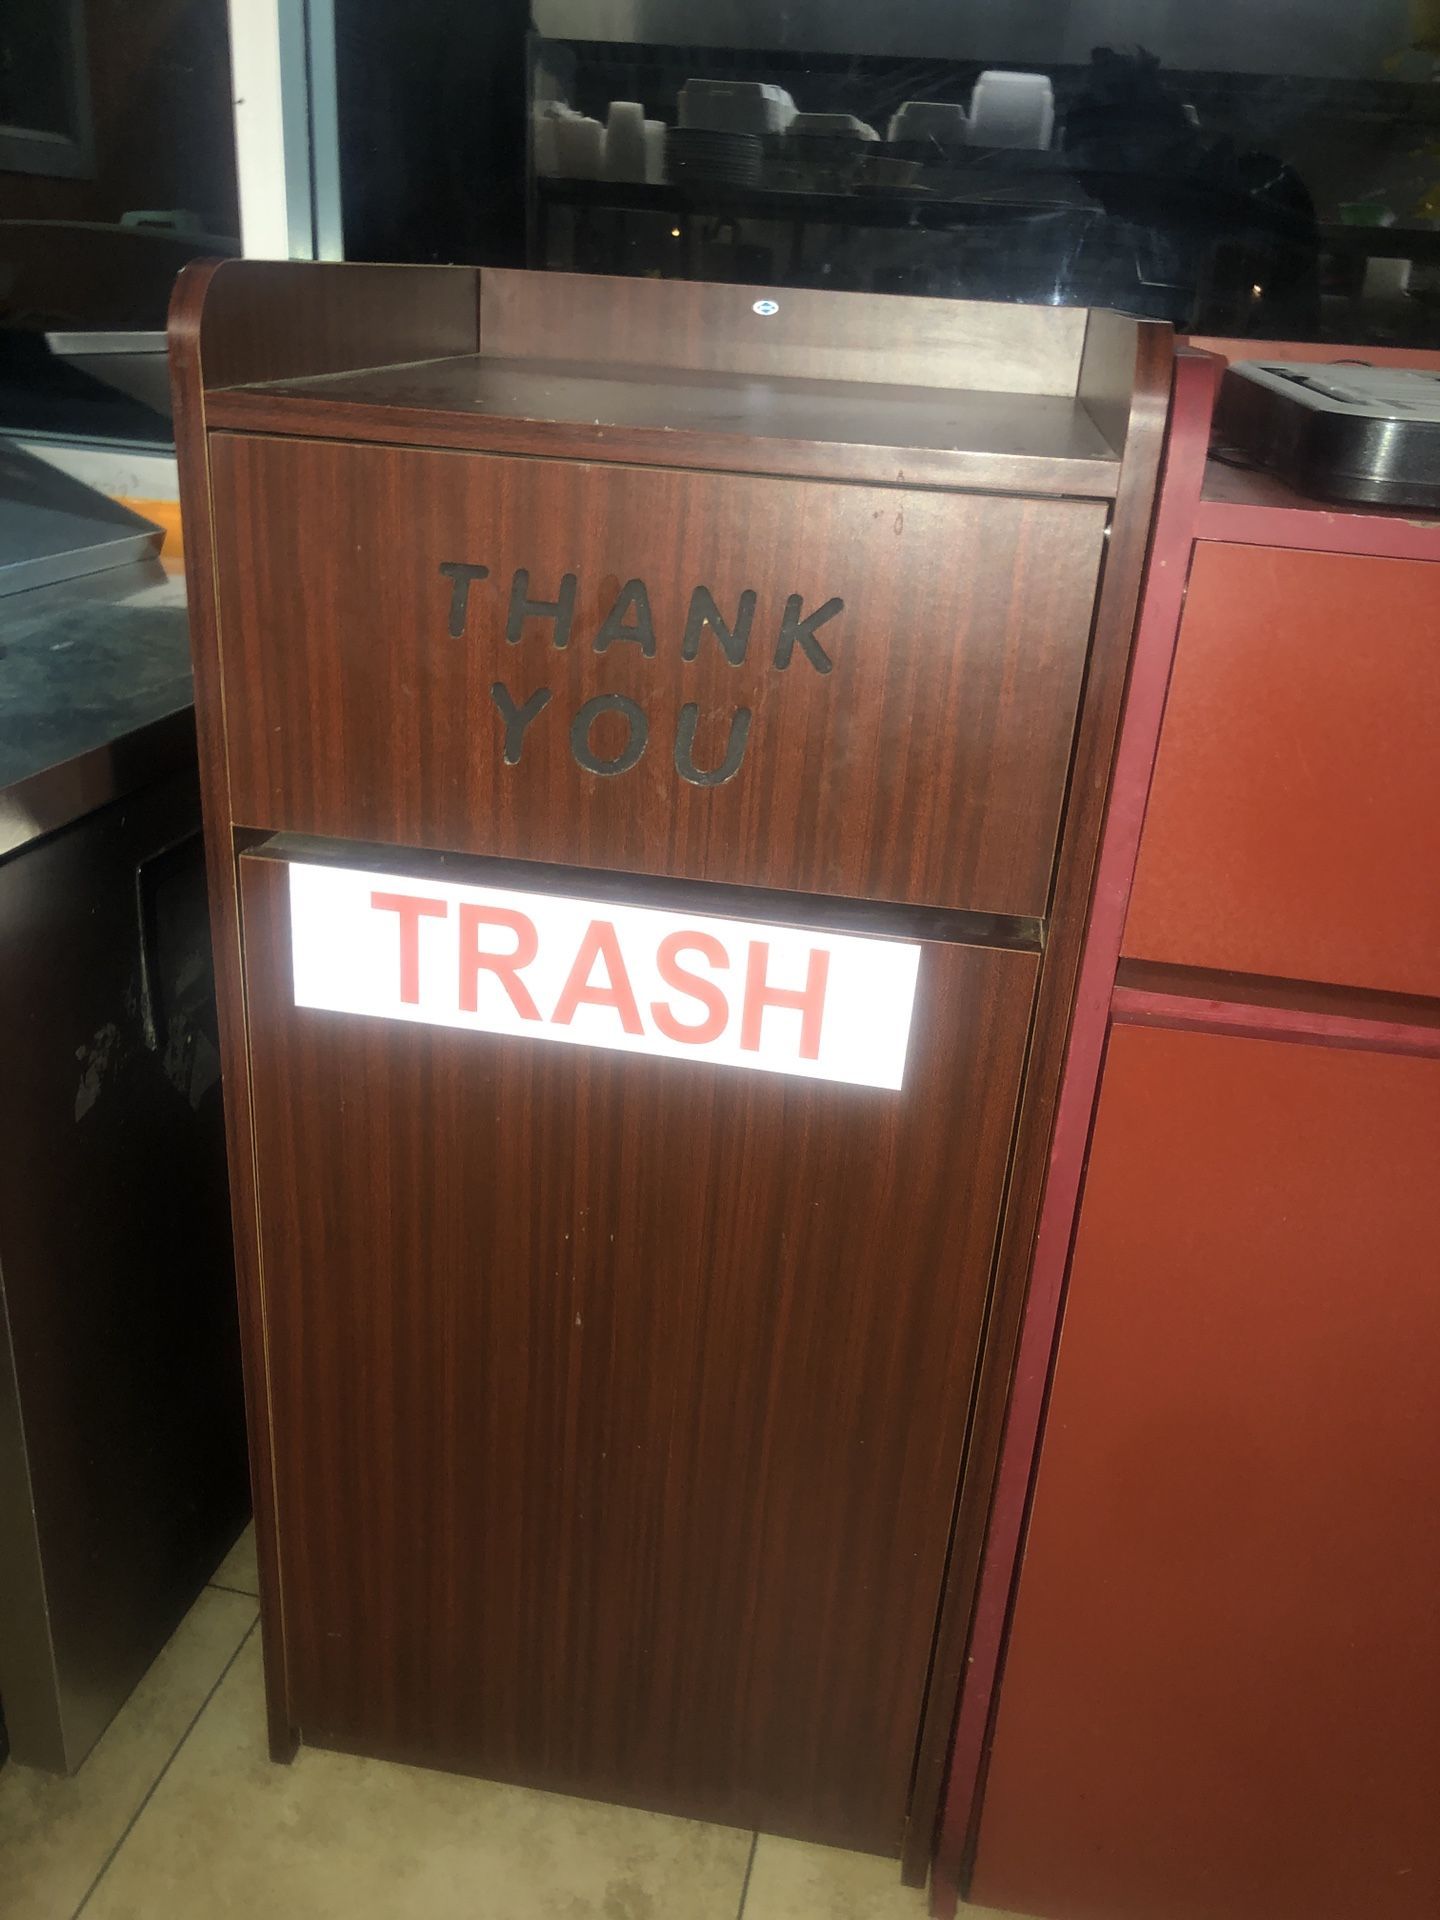 Trash receptacles